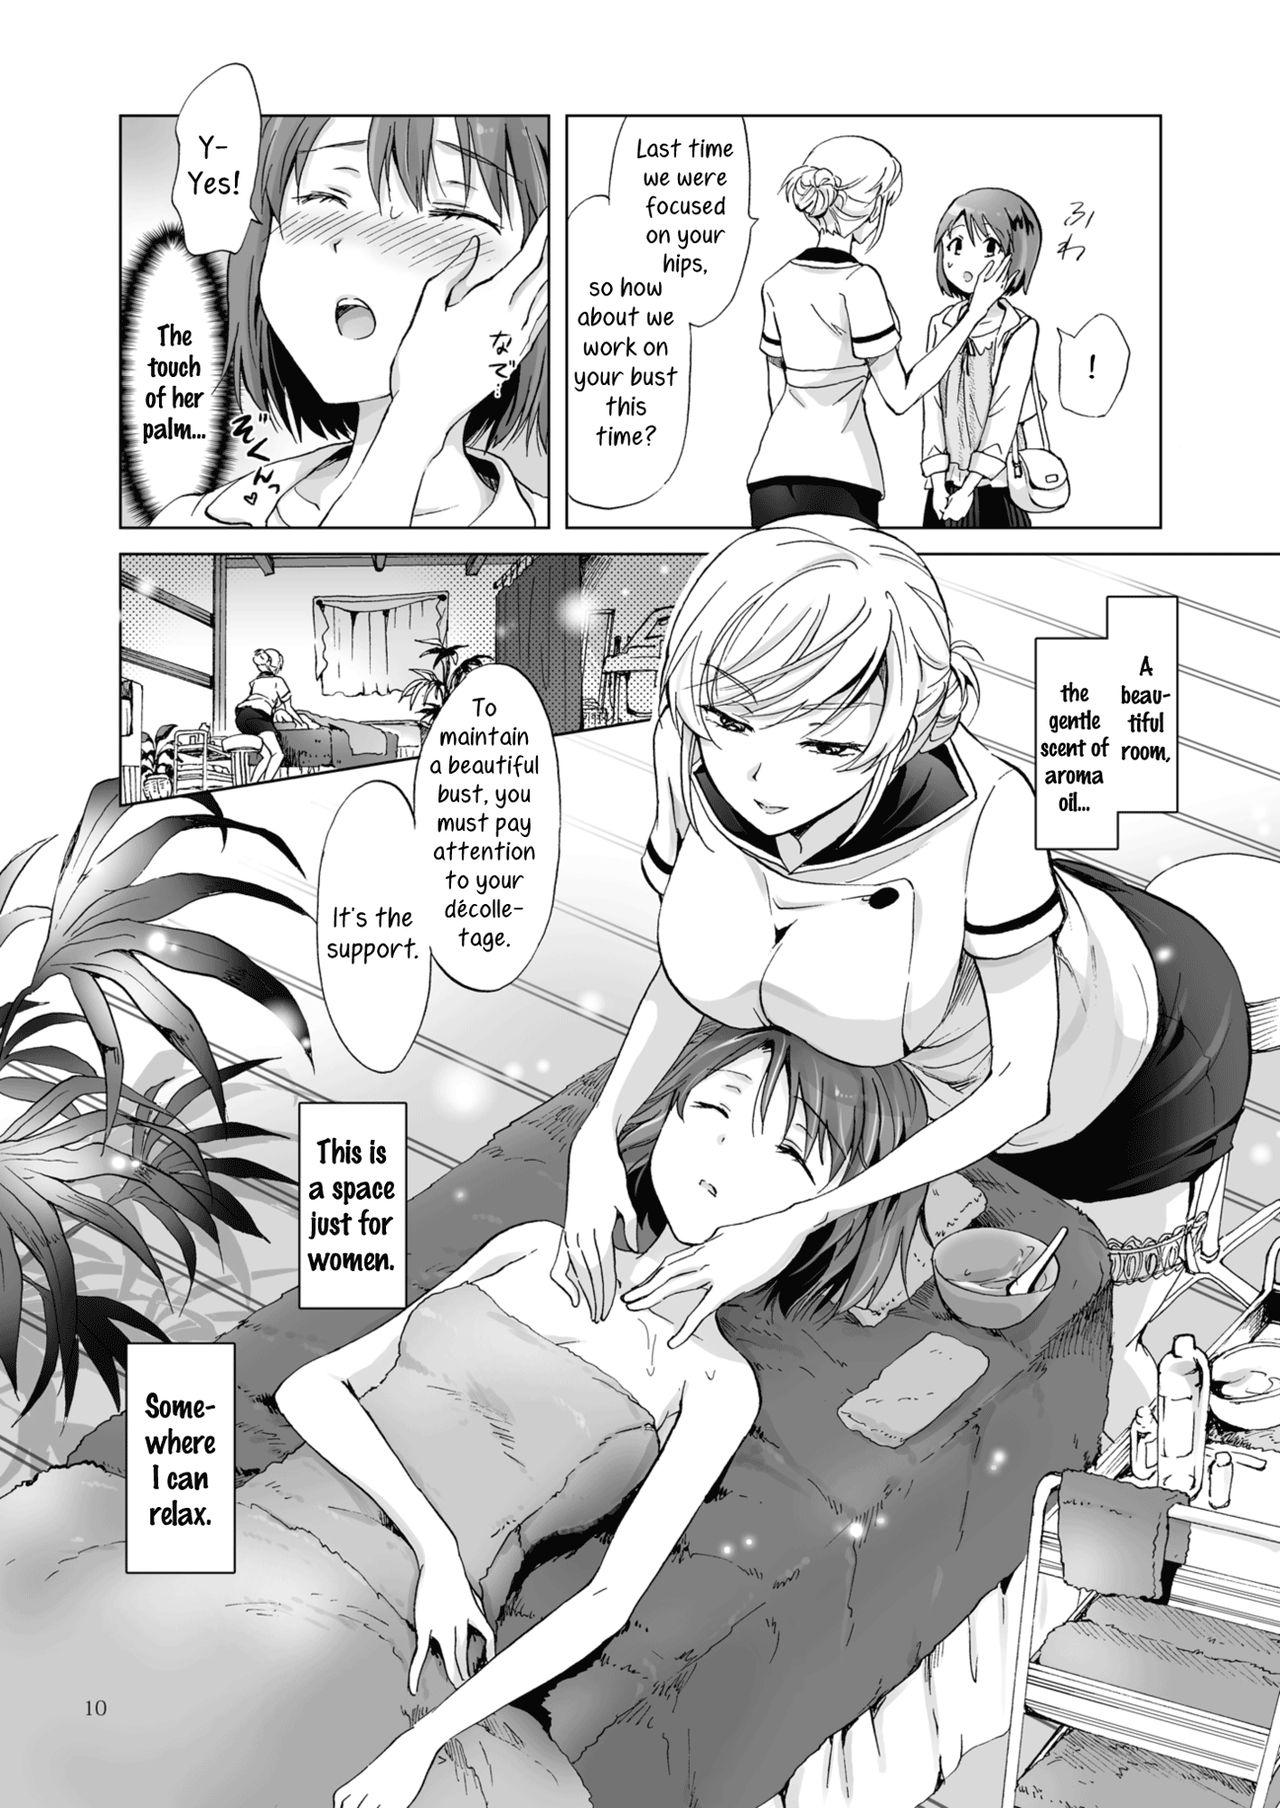 Assfucking Himitsu no Yuri Esthe Friend Course | Secret Yuri Salon, Friends Course Dicksucking - Page 10